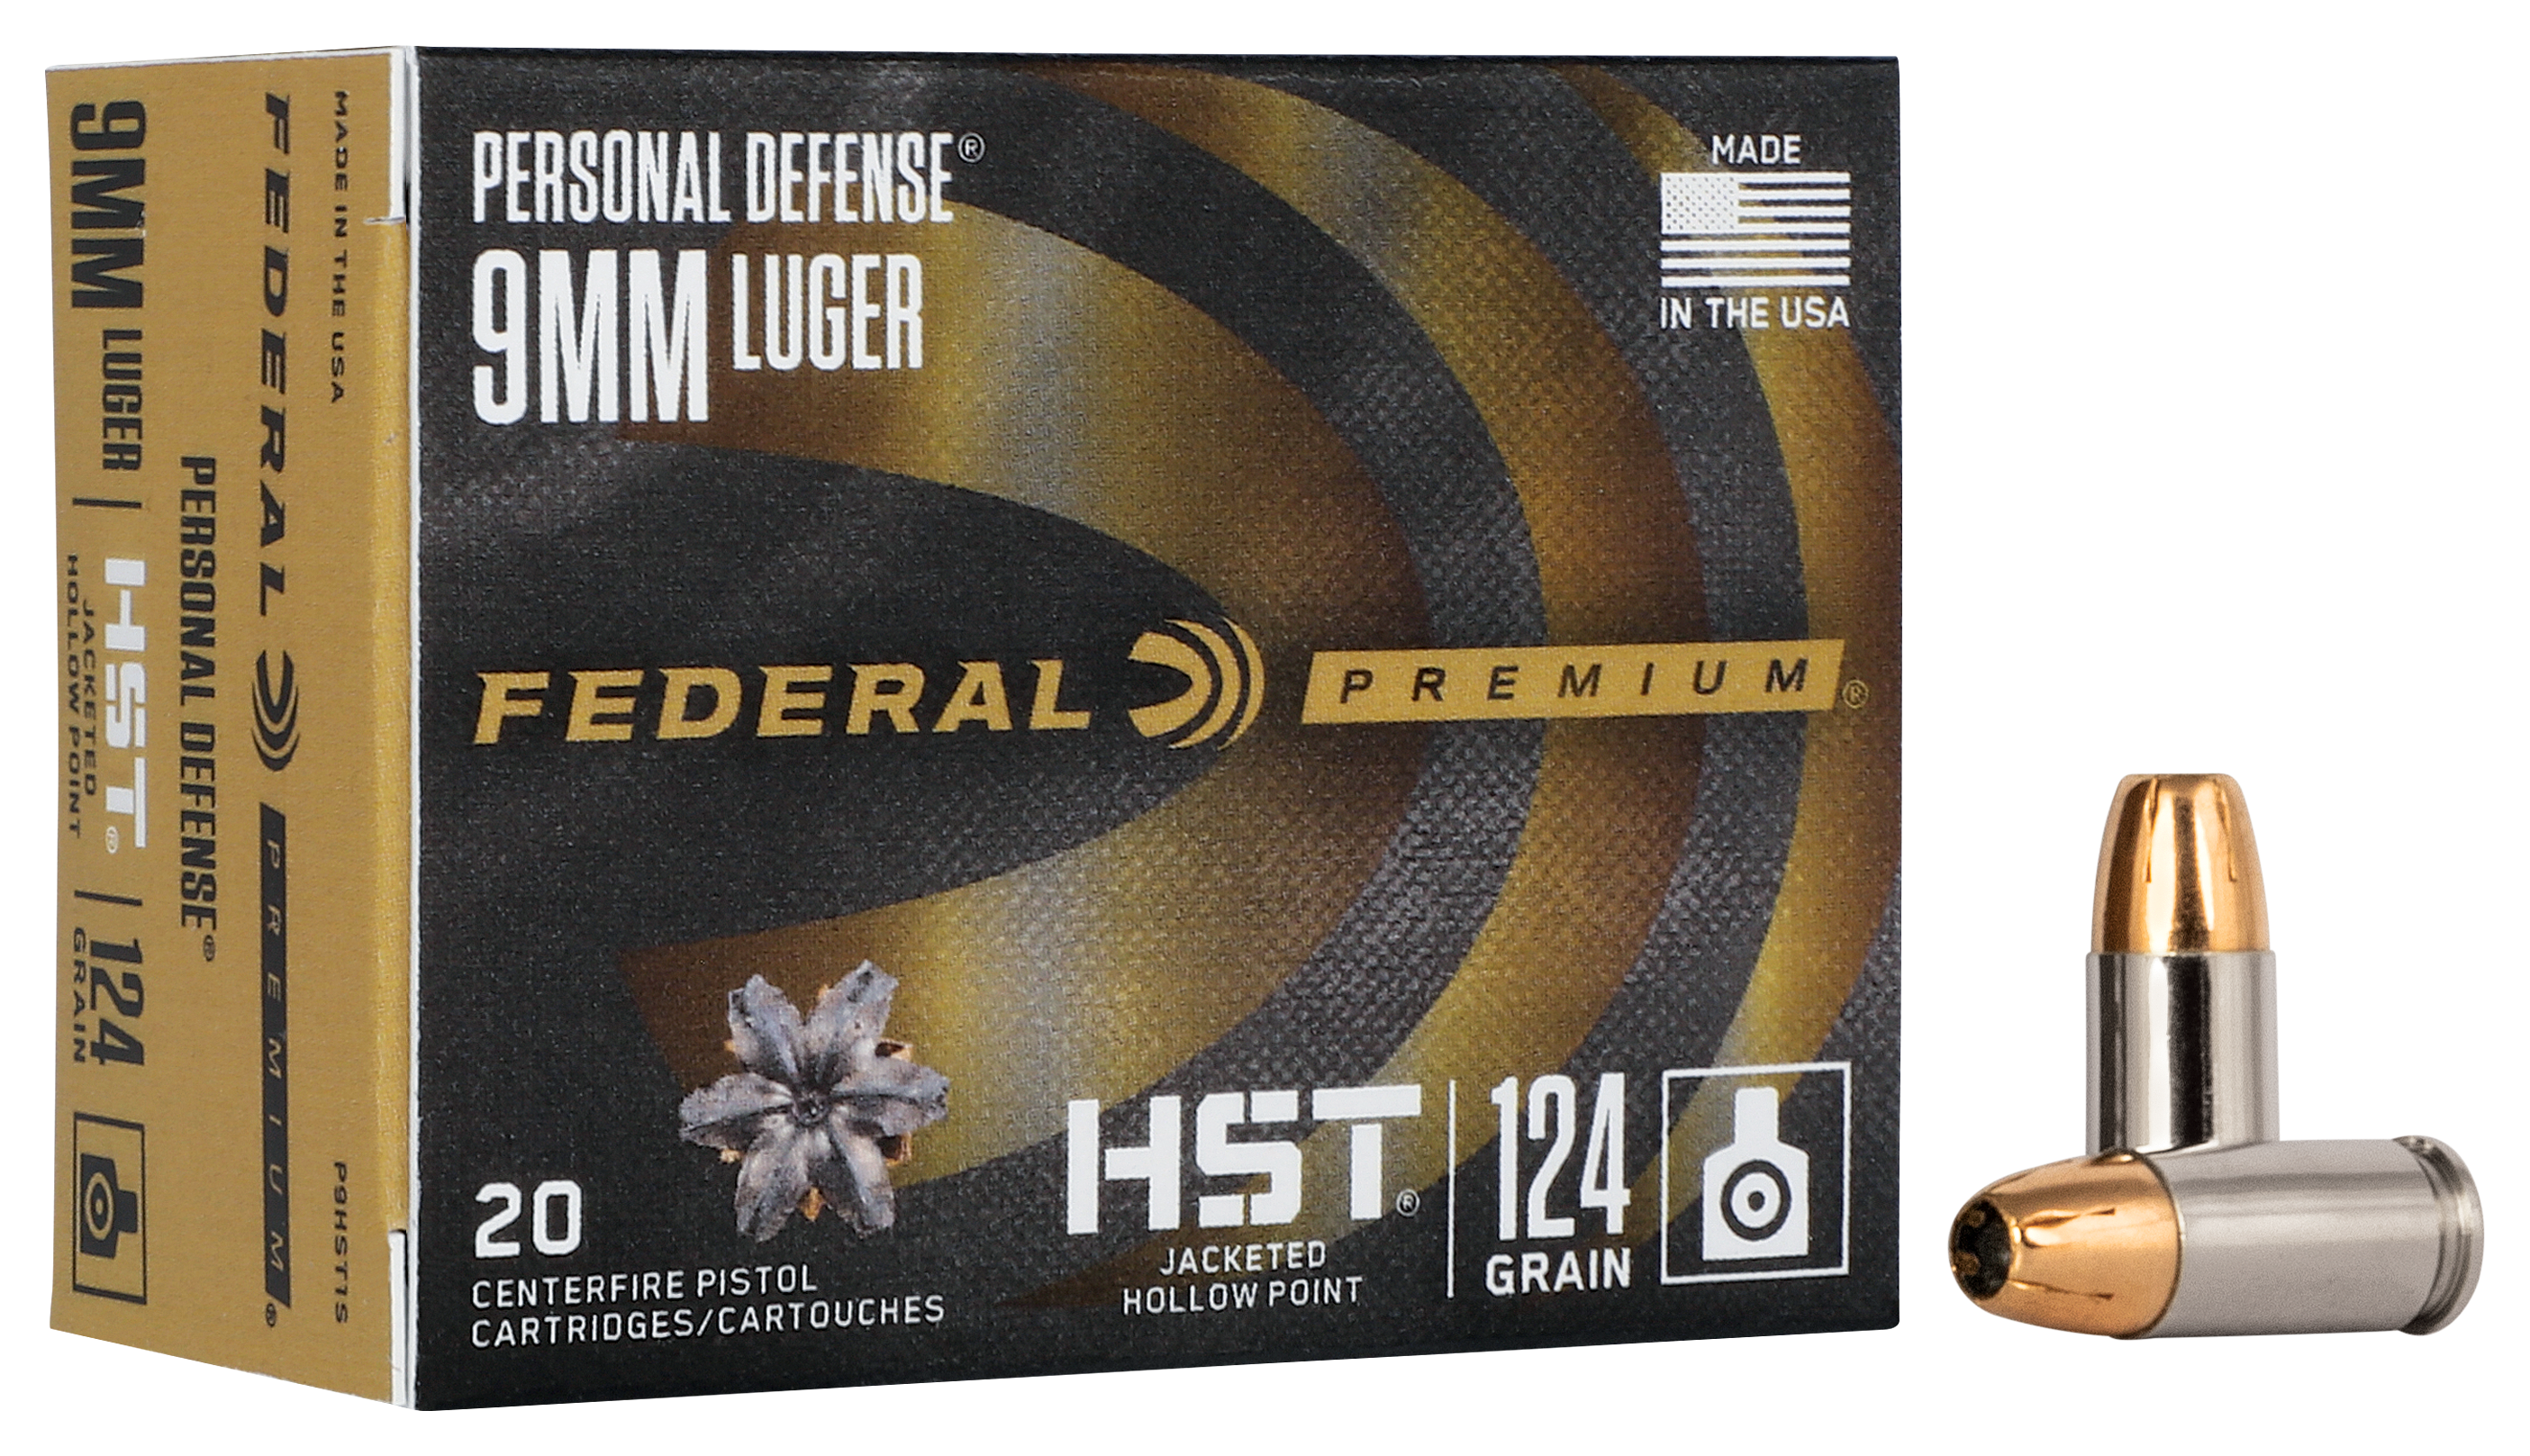 Federal Premium Personal Defense 9mm Luger 124 Grain HST Handgun Ammo